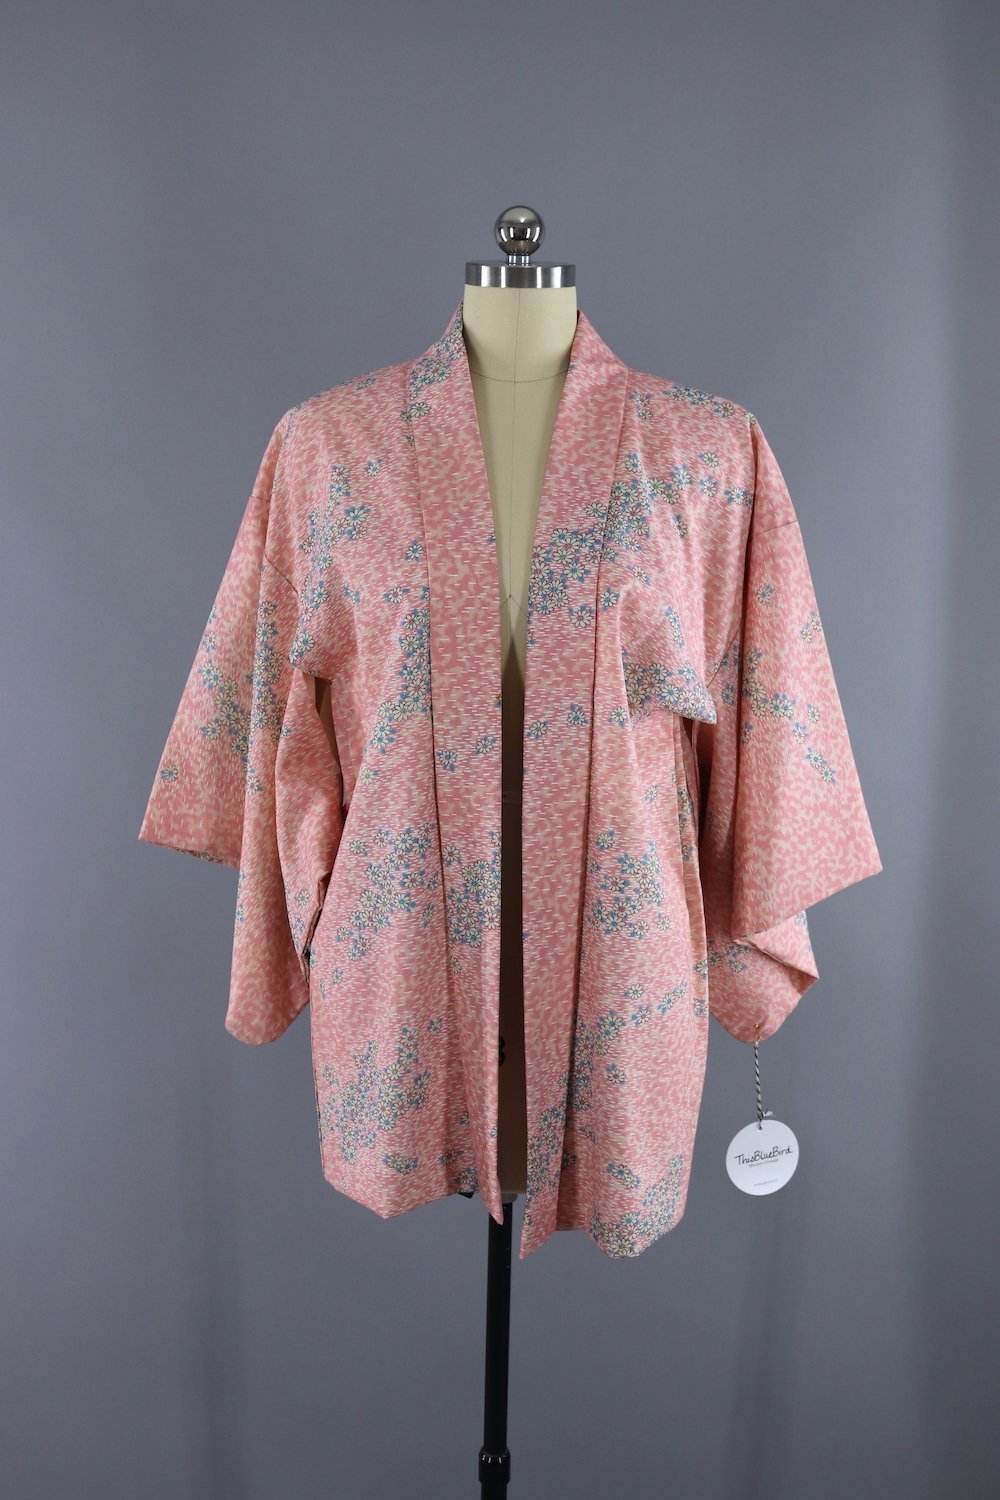 Vintage Cotton Kimono Cardigan - Pink and White Floral Print - ThisBlueBird